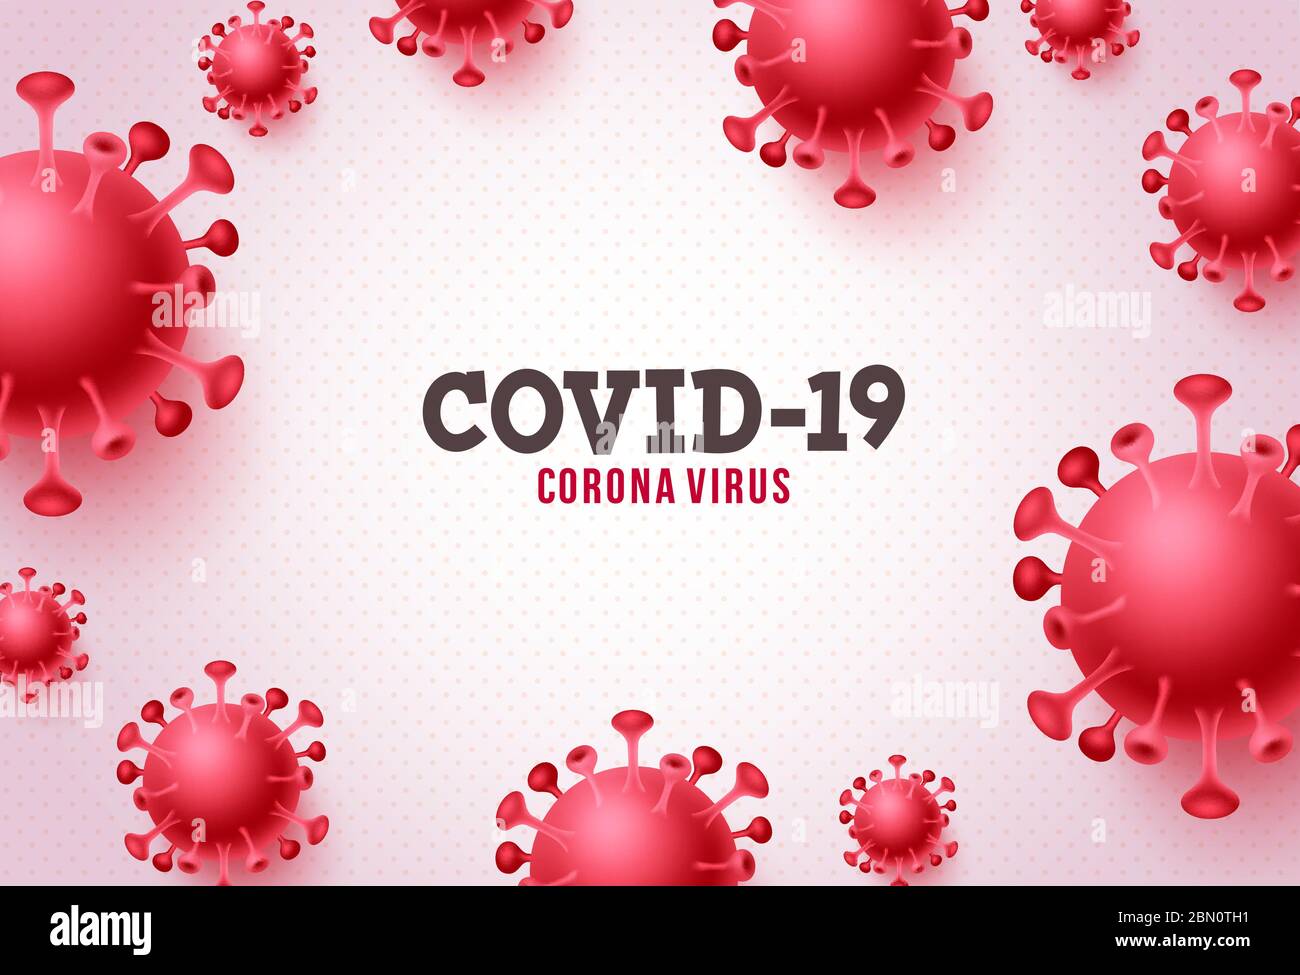 Covid-19 Corona Virus Vektor-Banner Hintergrund. Covid-19 Coronavirus Text in white space with Red covid19 Novel Corona Virus Stock Vektor